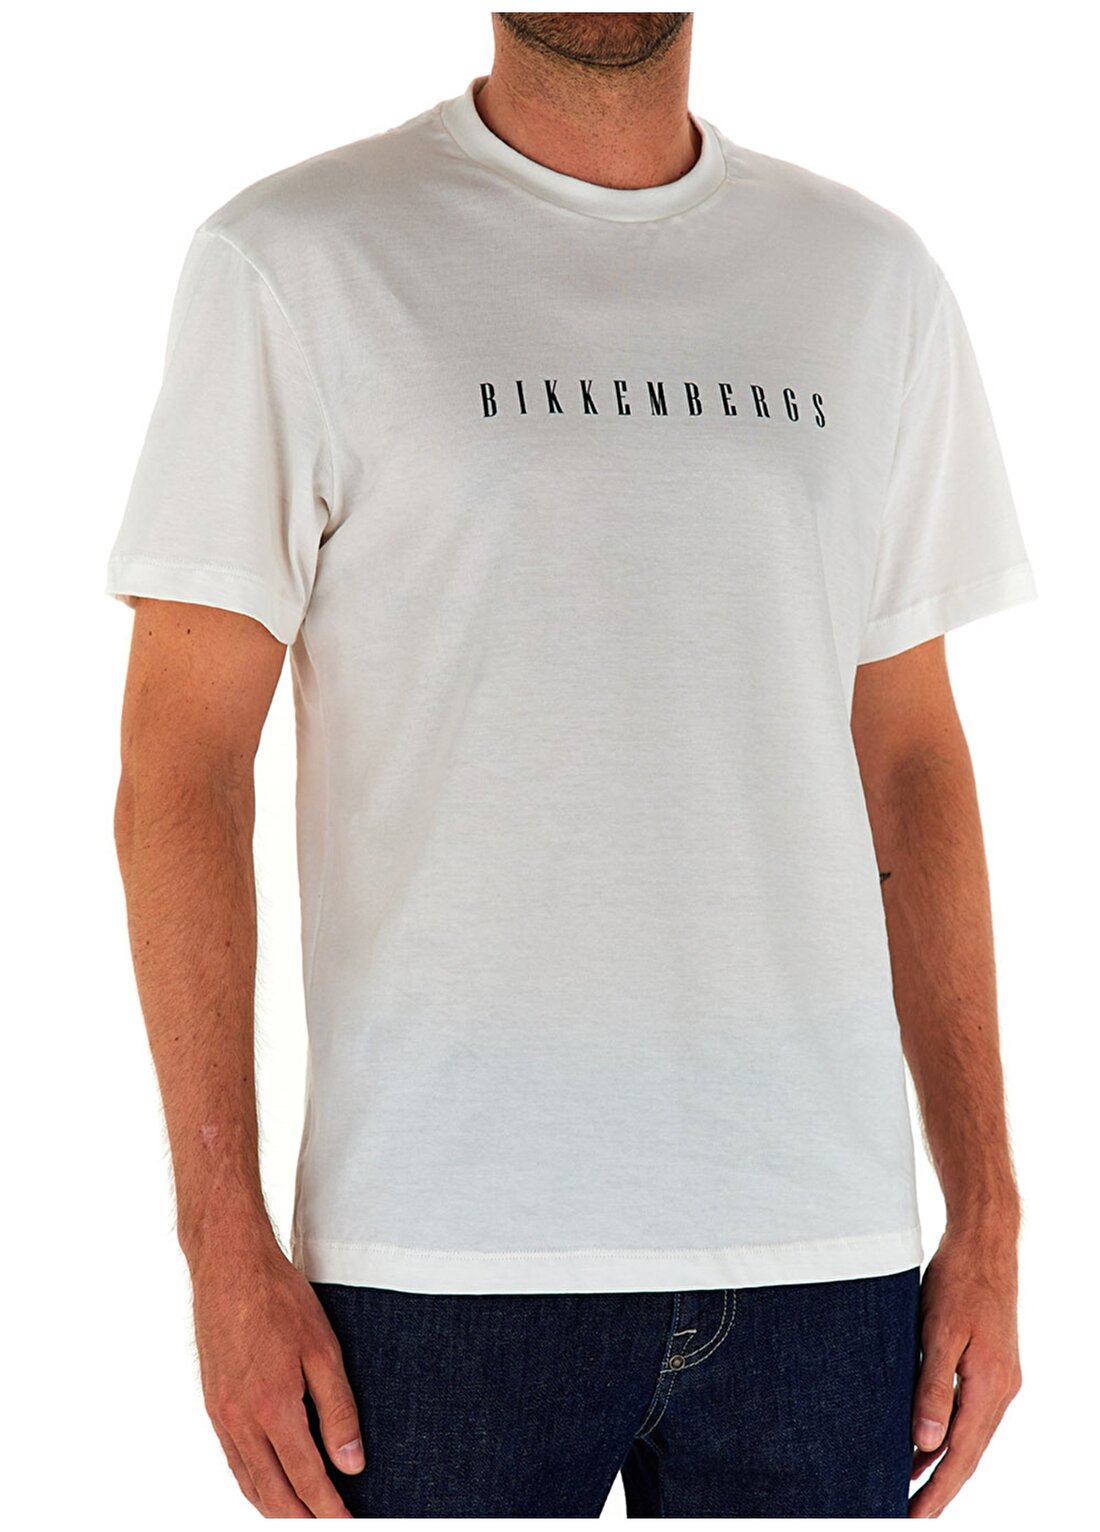 Bikkembergs Beyaz Erkek T-Shirt C 4 114 25